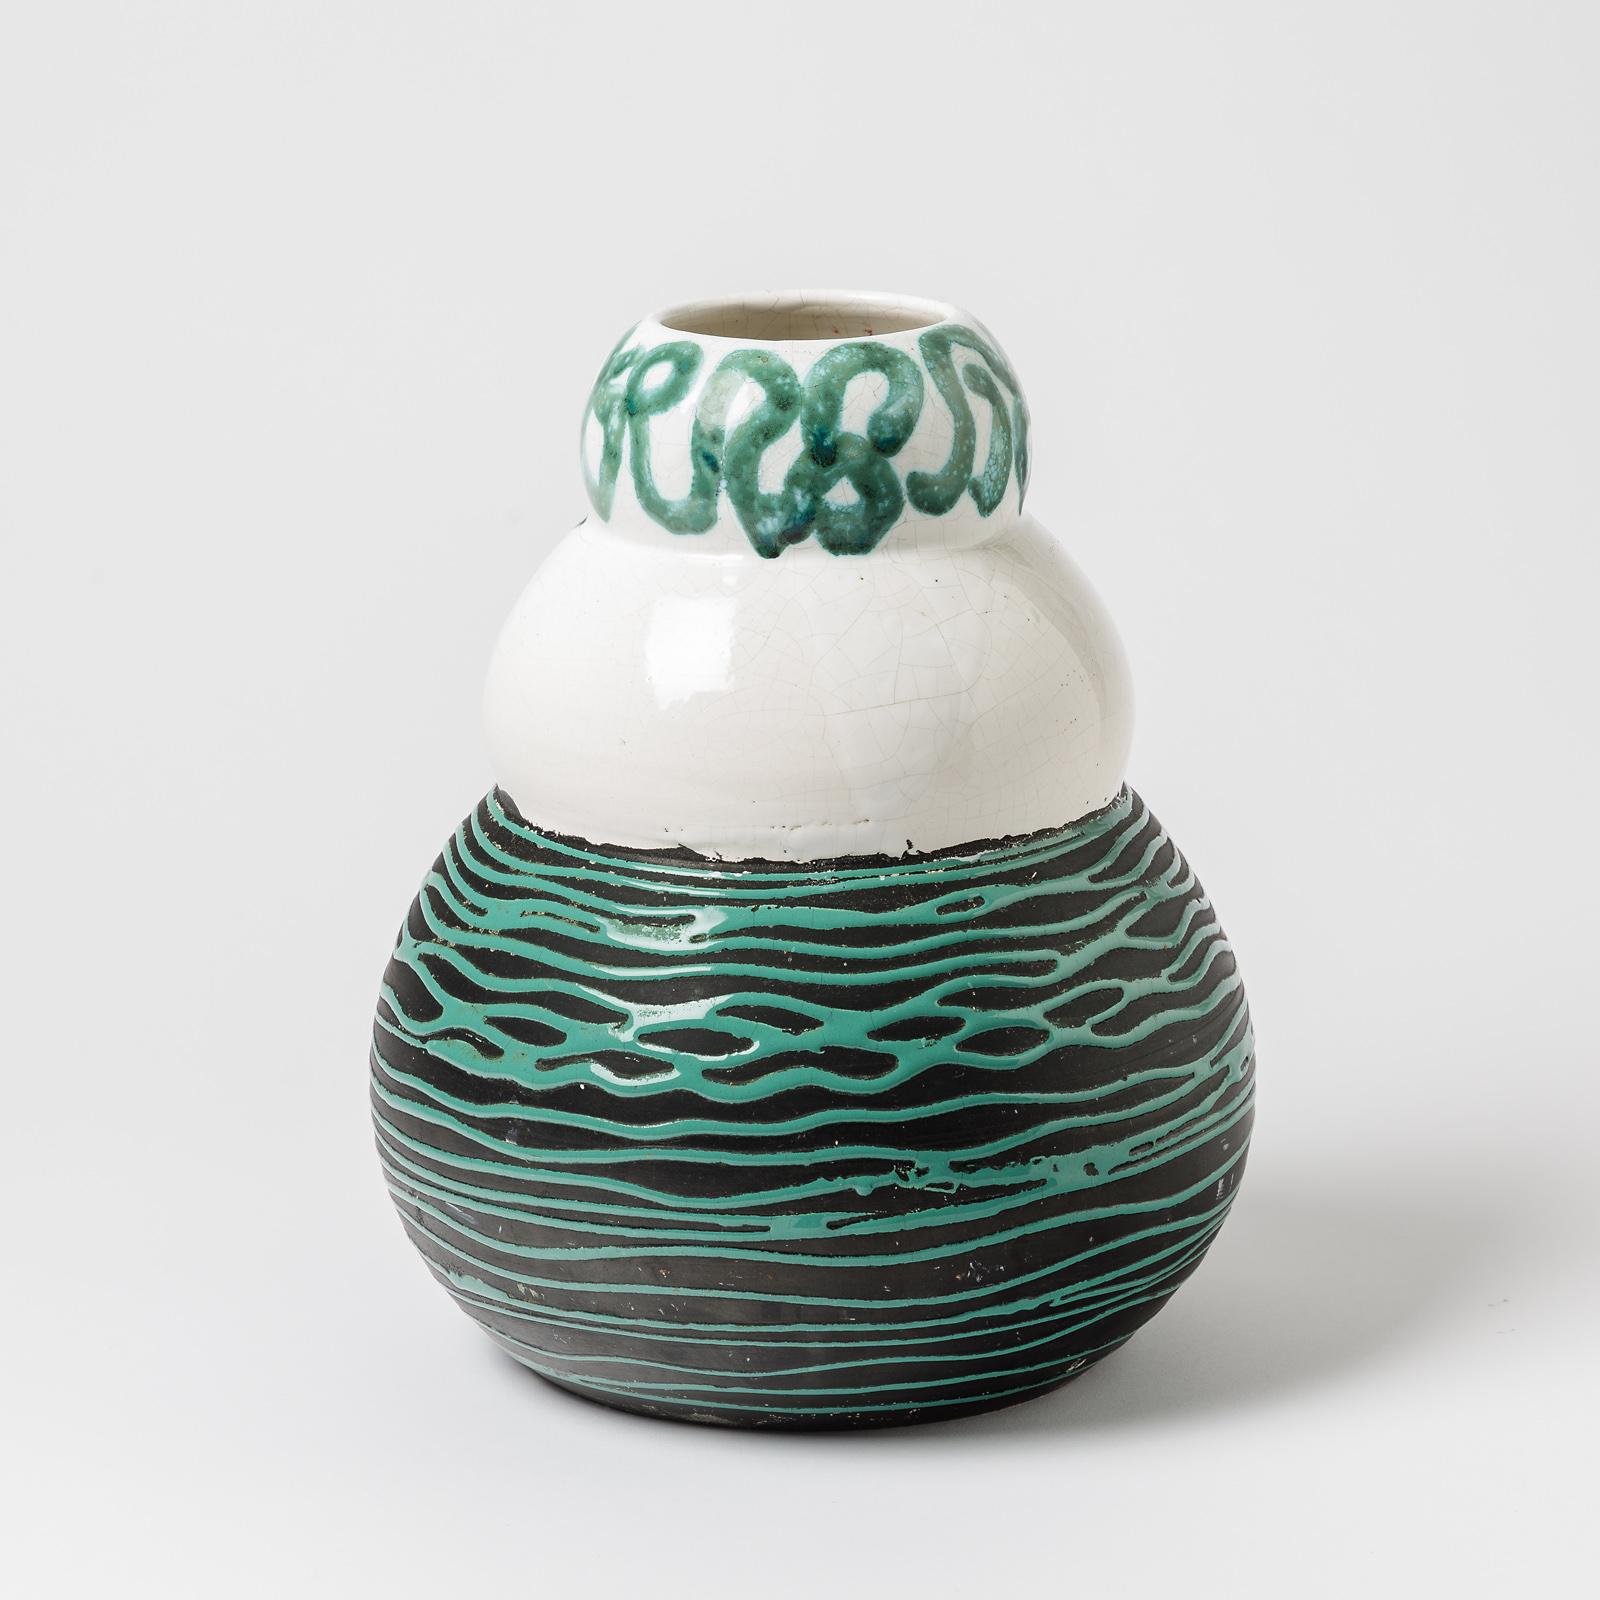 Un vase en céramique à décor de glaçures blanches, vertes et noires, attribué à Sainte Radegonde.
Conditions d'origine parfaites.
Circa 1950-1960.